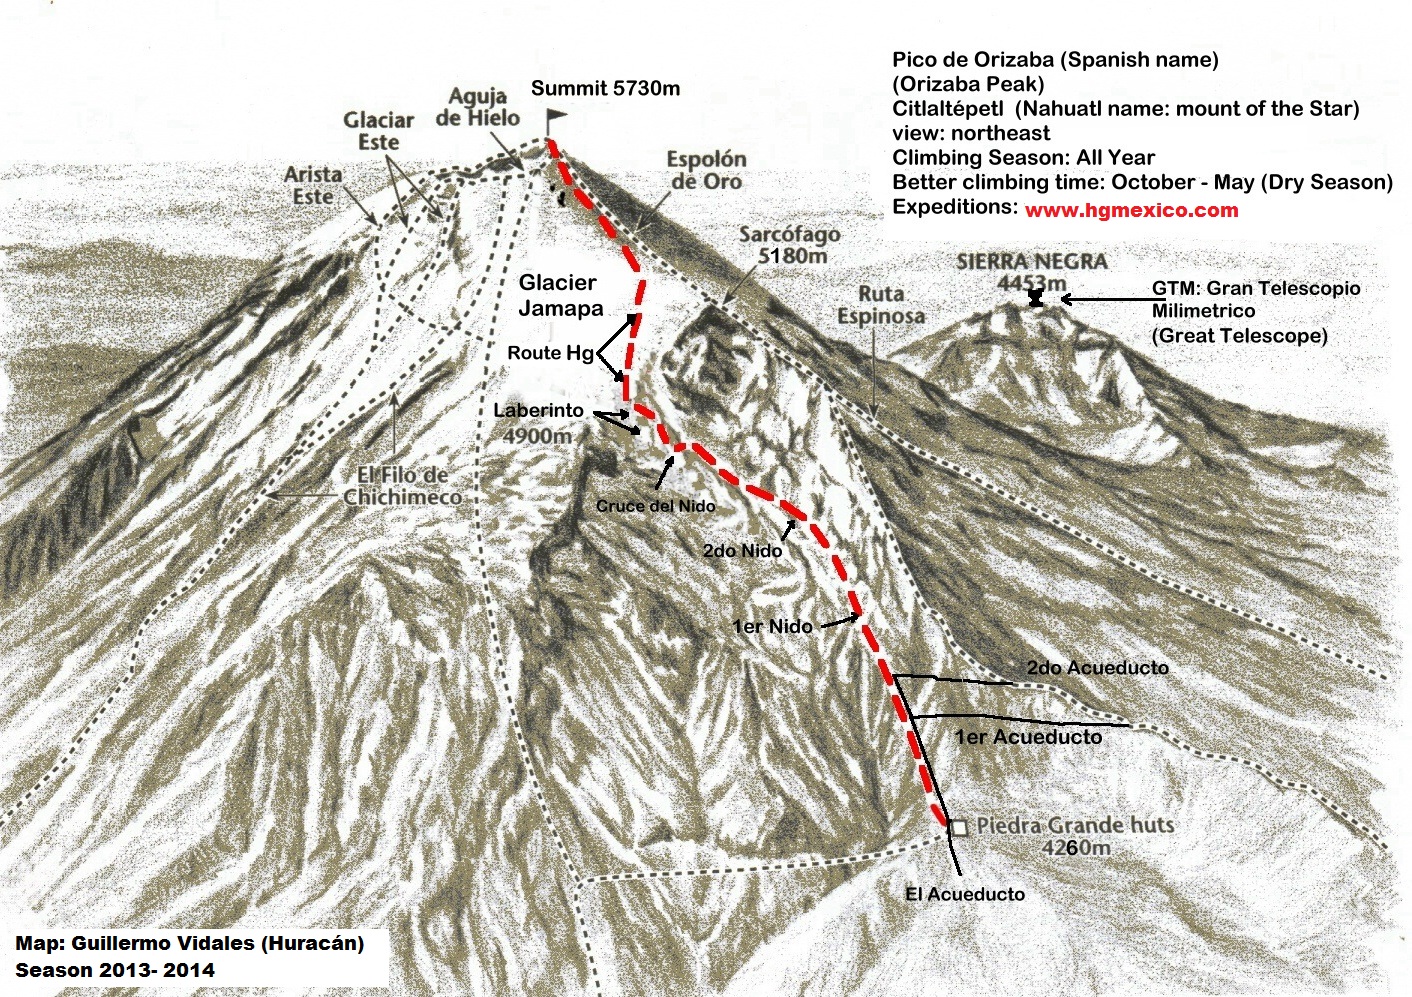 Pico de Orizaba mapa de las rutas